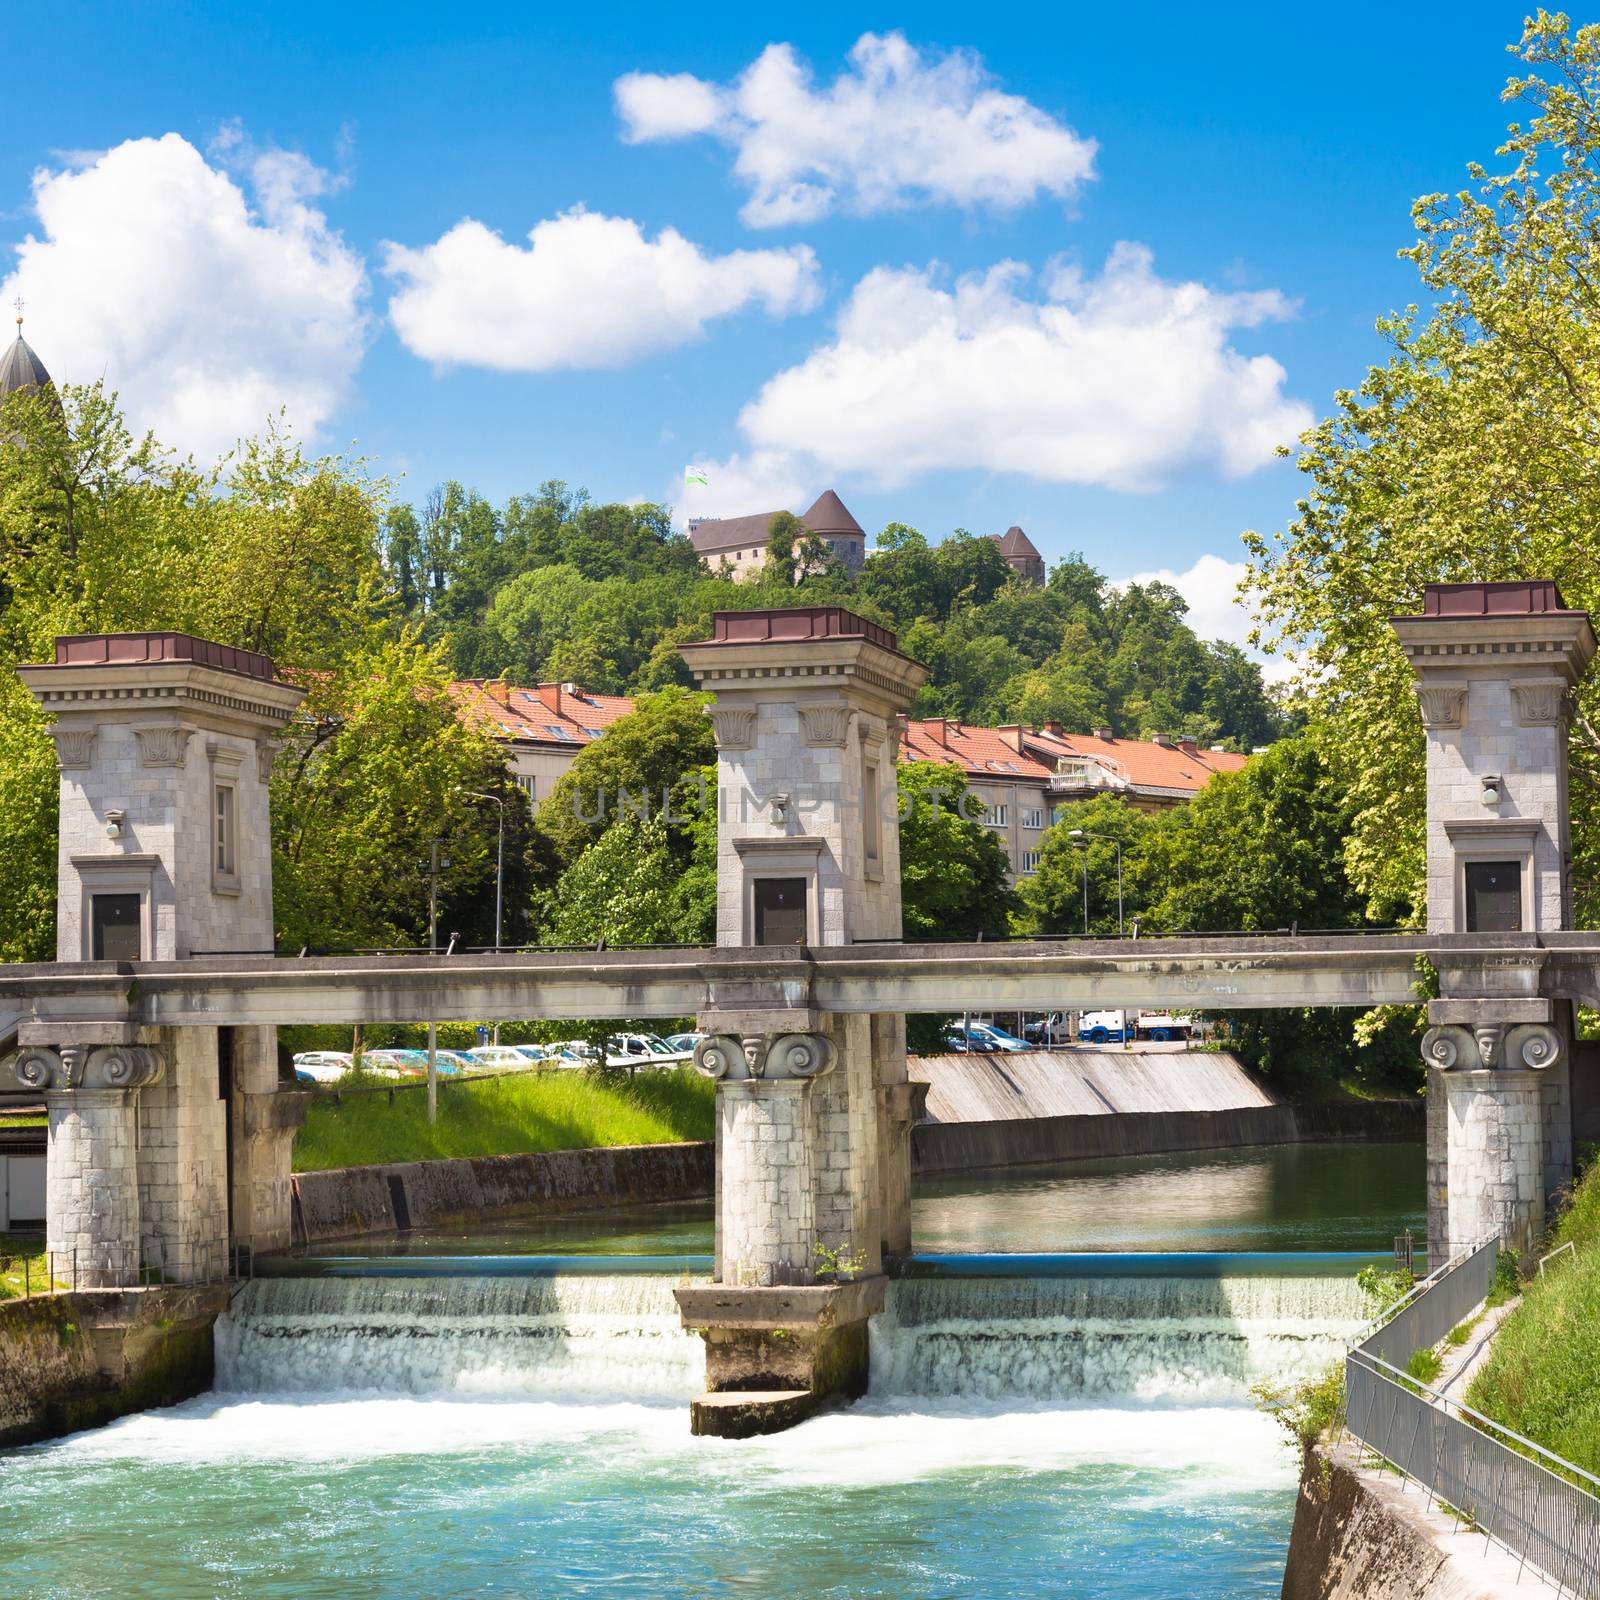 Sluice on the River Ljubljanica, Ljubljana, Slovenia. by kasto